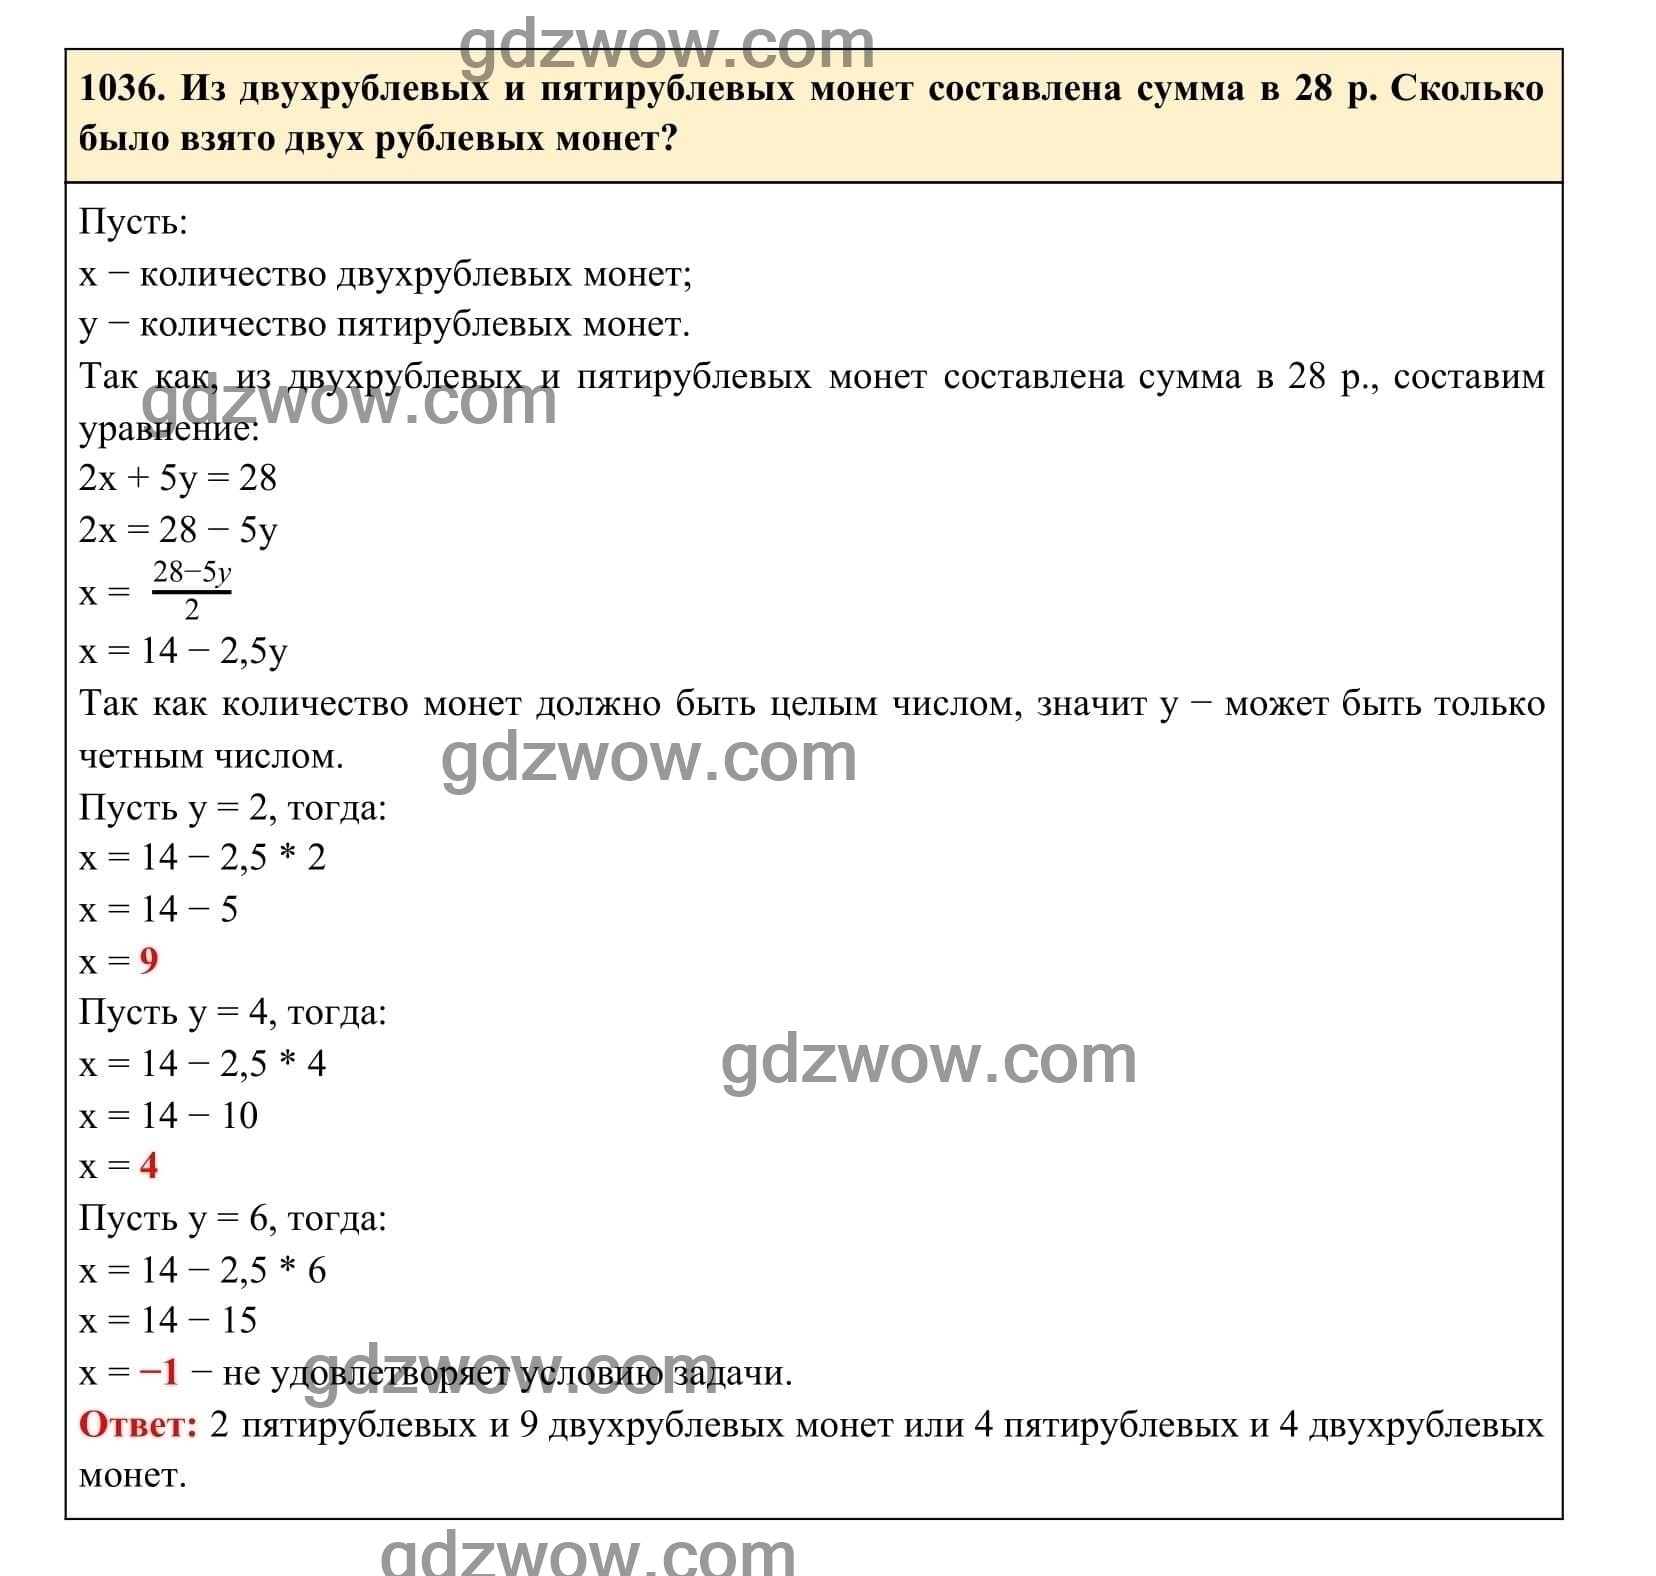 Упражнение 1036 - ГДЗ по Алгебре 7 класс Учебник Макарычев (решебник) - GDZwow